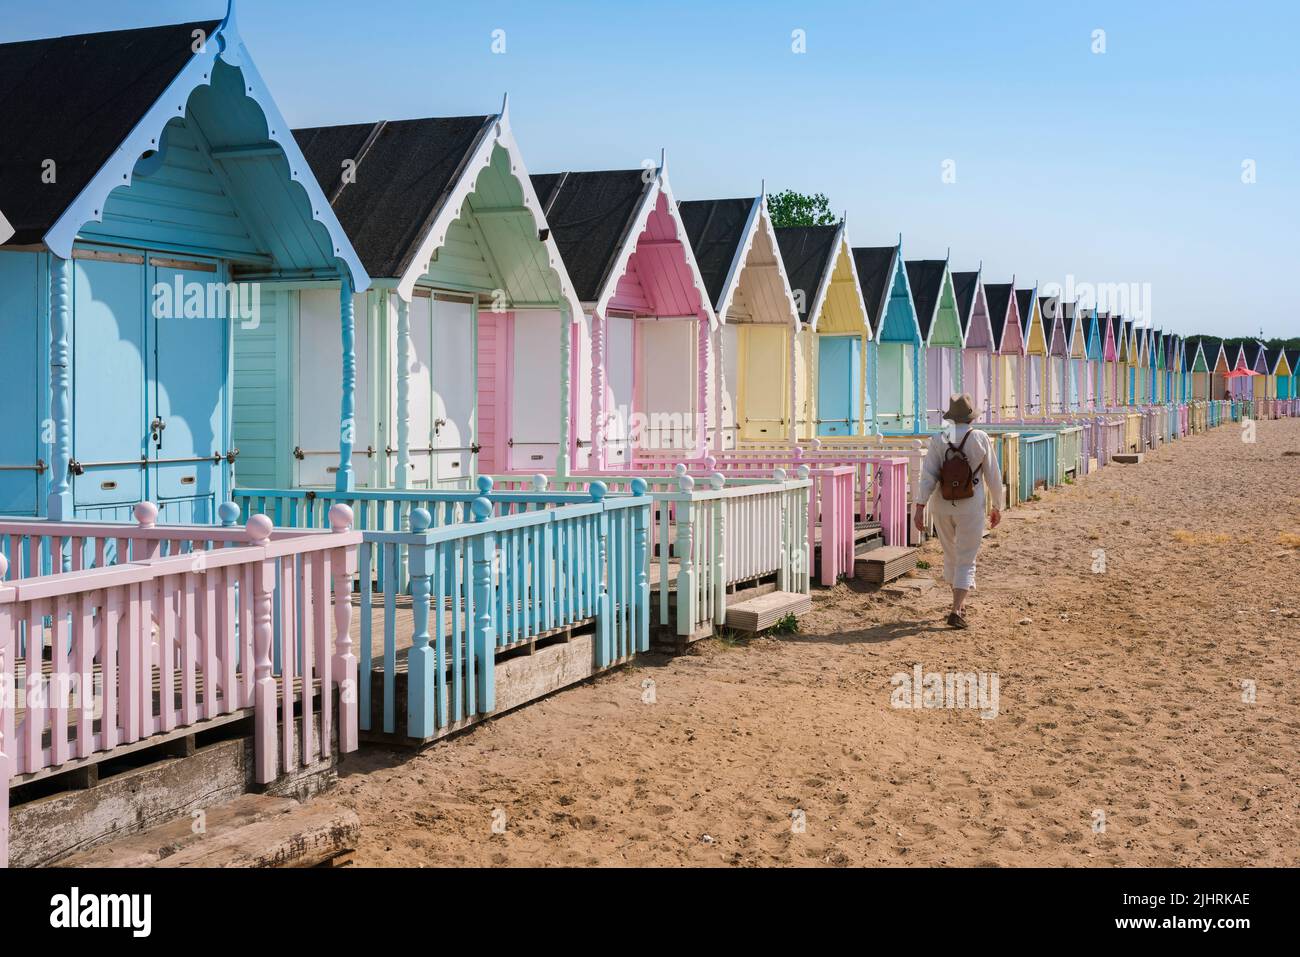 Frau Urlaub allein für Frauen, Blick im Sommer auf eine alleinreisende Frau, die an bunten Strandhütten an einem Sandstrand vorbeiläuft, England, Großbritannien Stockfoto